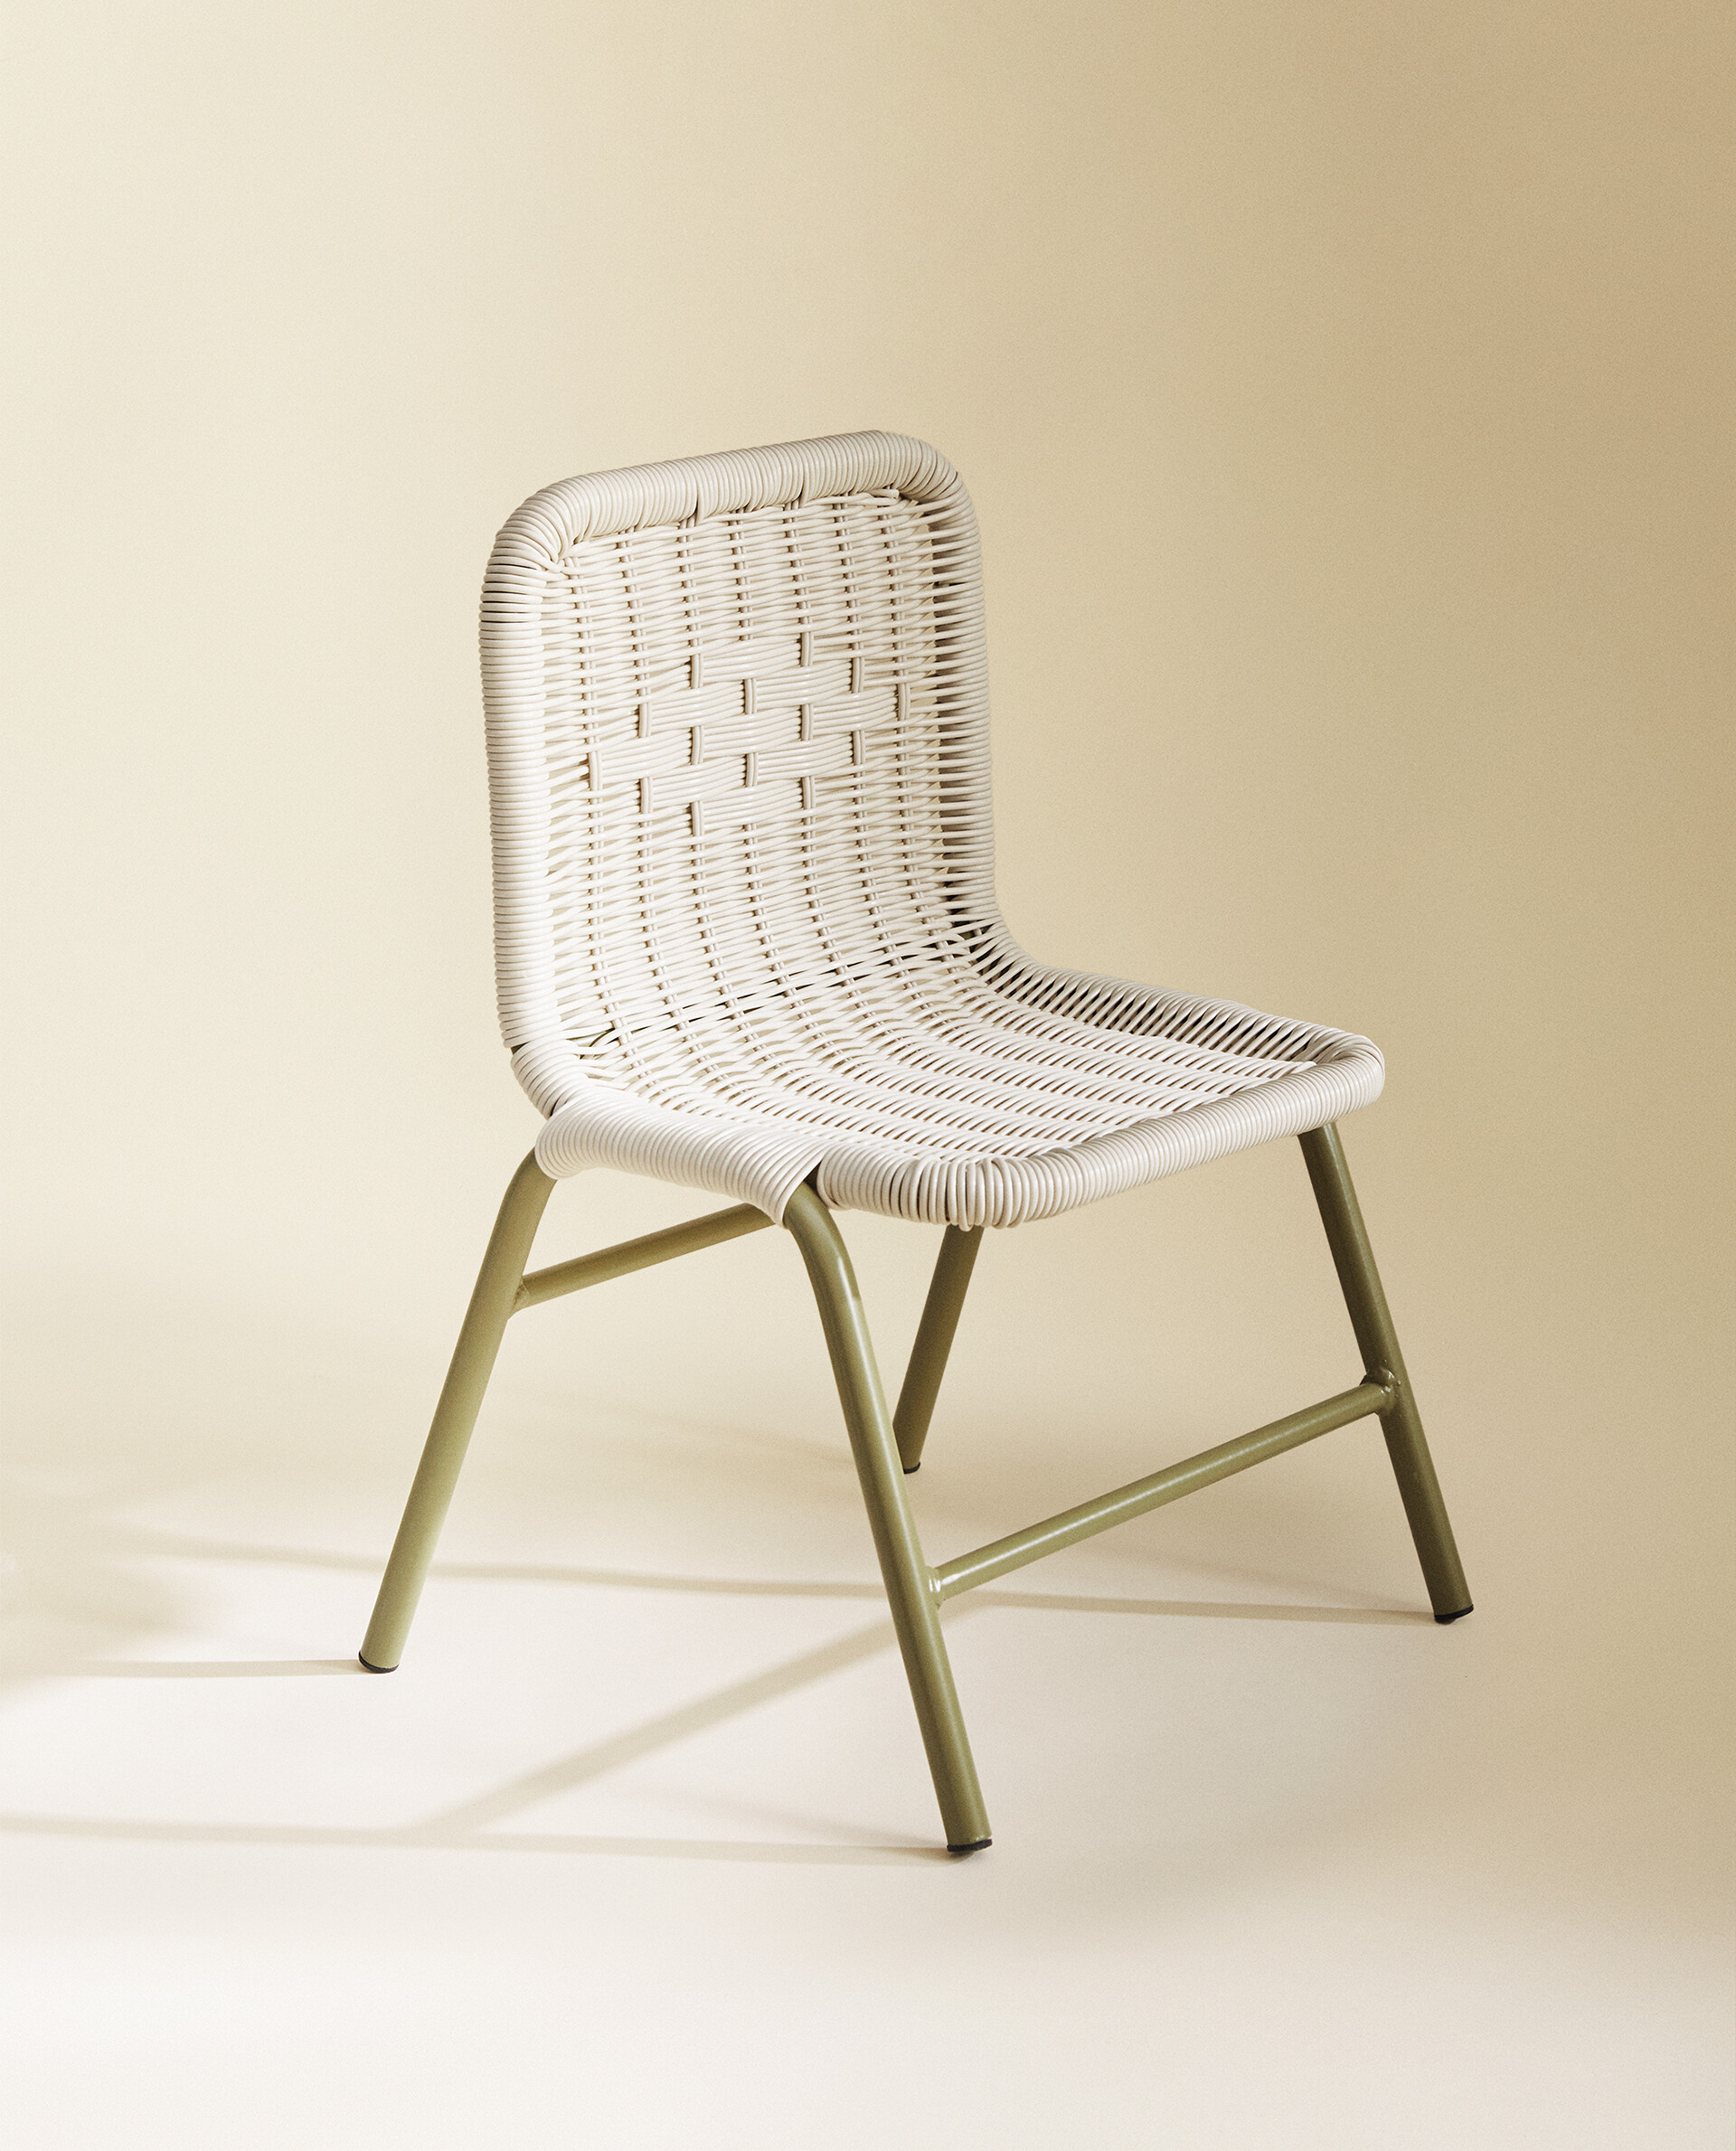 Стул Zara Home Children's Woven-back Metal, бежевый/зеленый скандинавский бытовой детский стул спинка детский низкий стул сменный стул маленький стул пластиковый стул скамейка